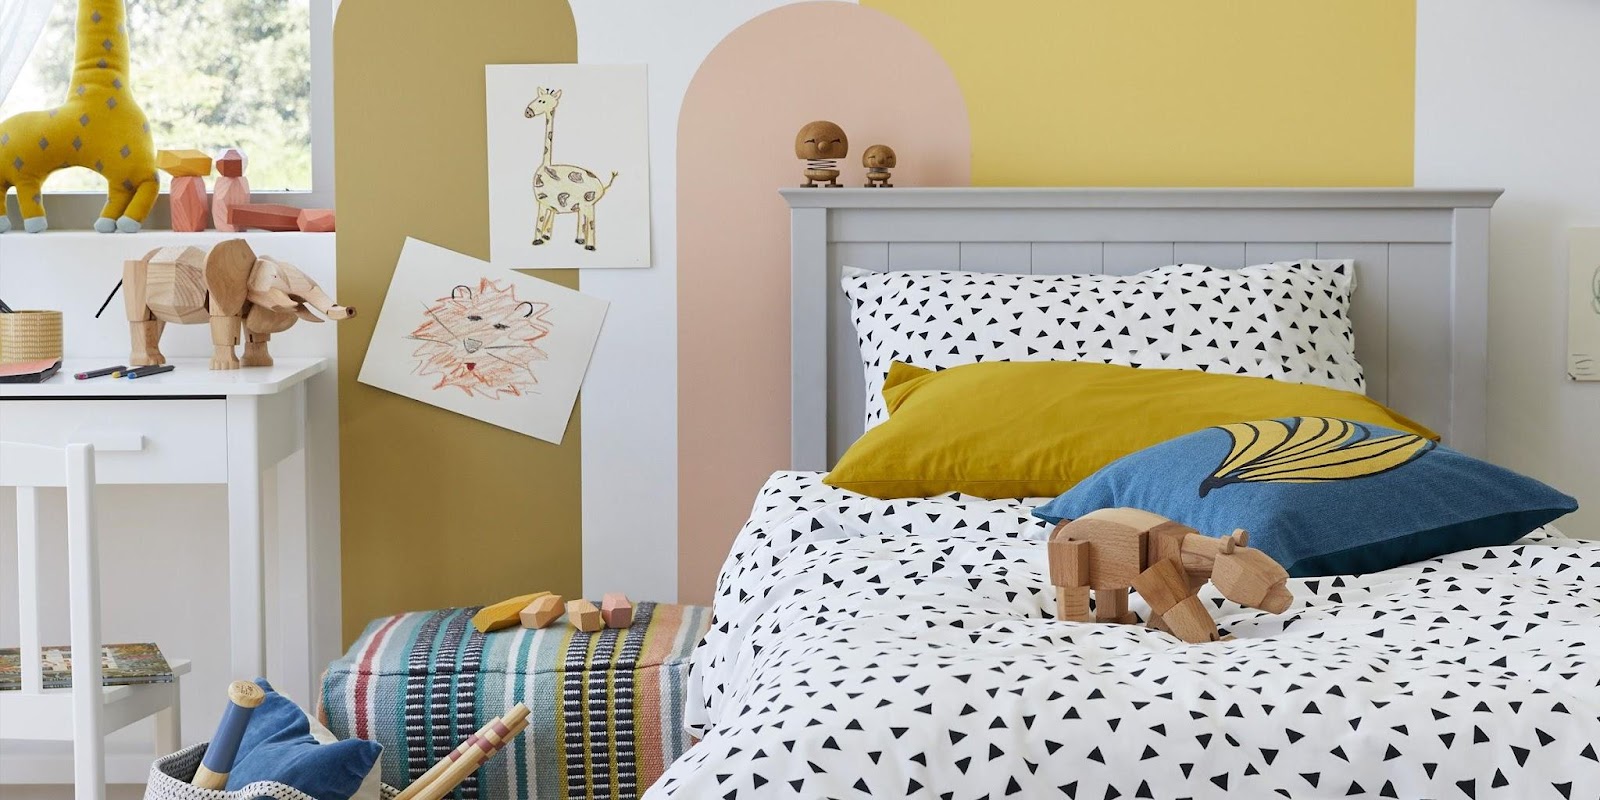 Dresser For A Kid’s Bedroom: Steps To Choose